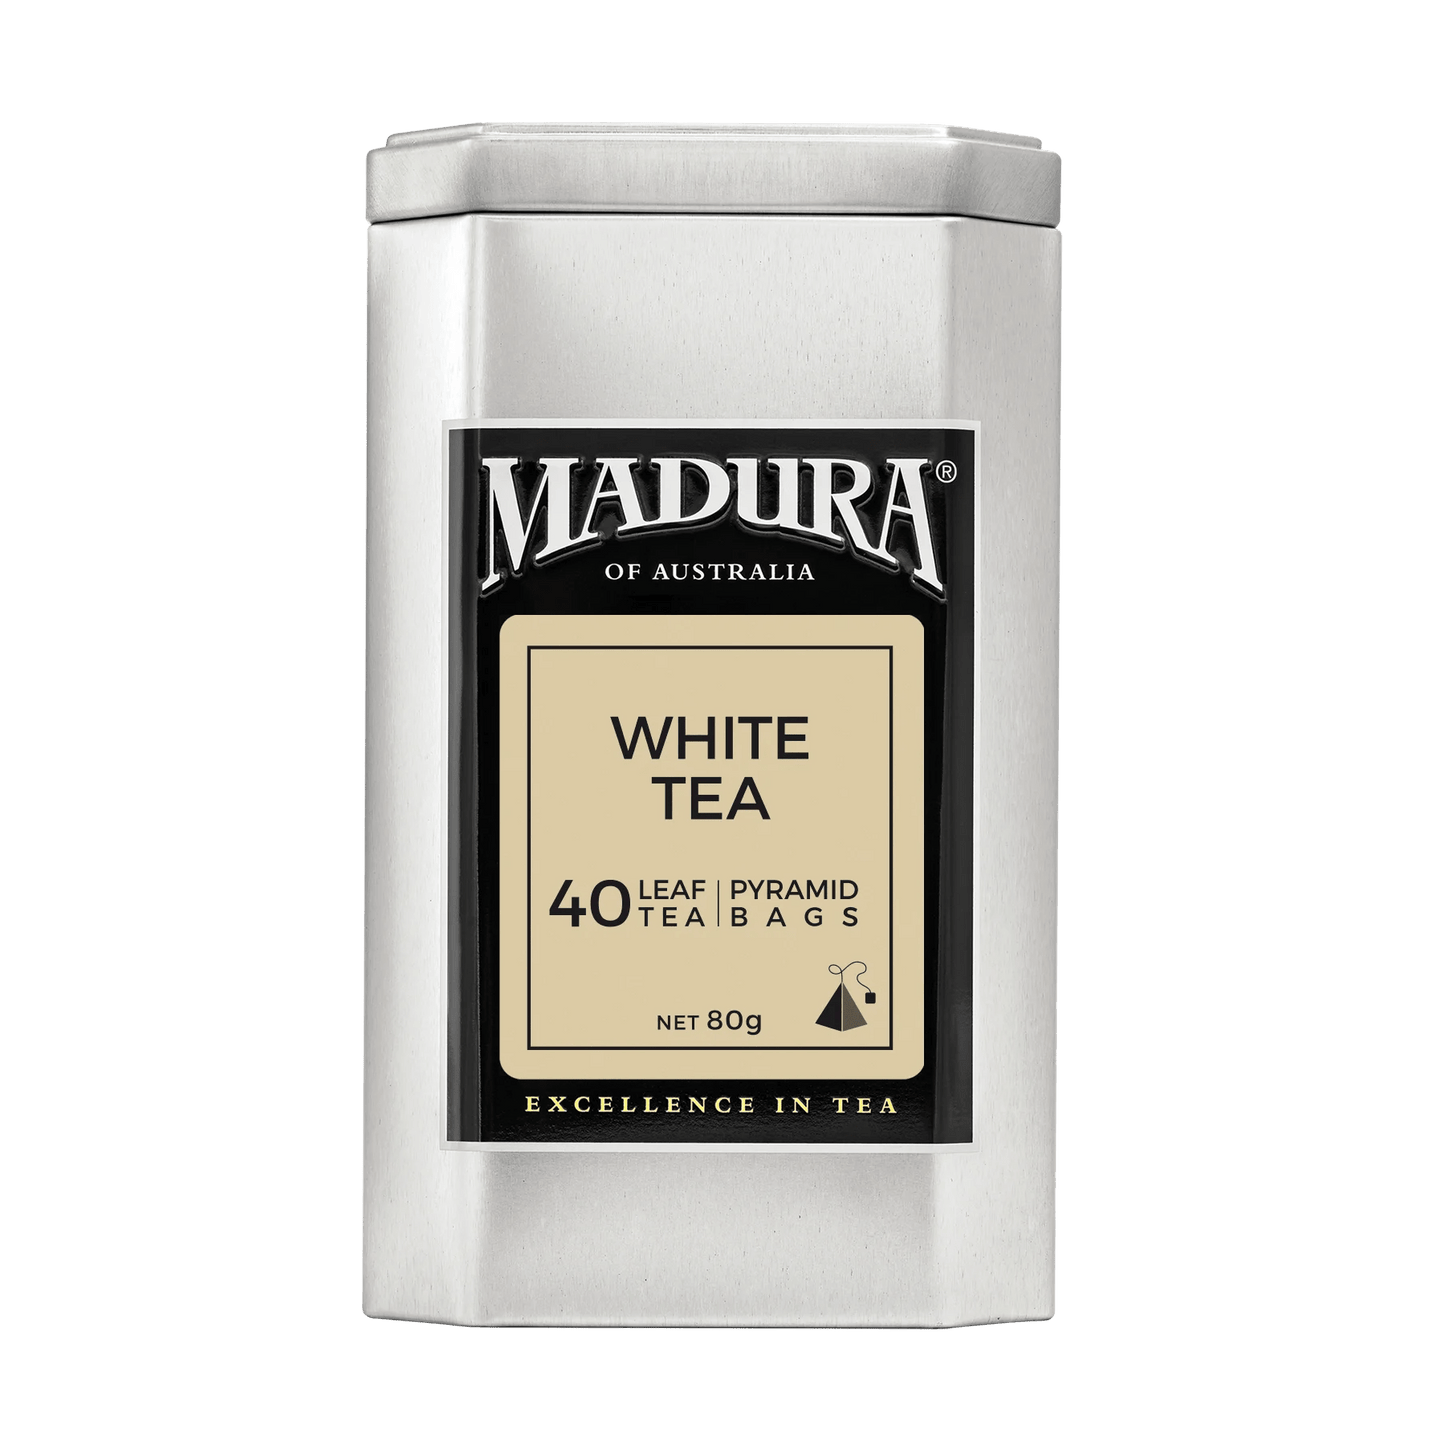 White Tea 40 Leaf Infusers in Caddy - Madura Tea